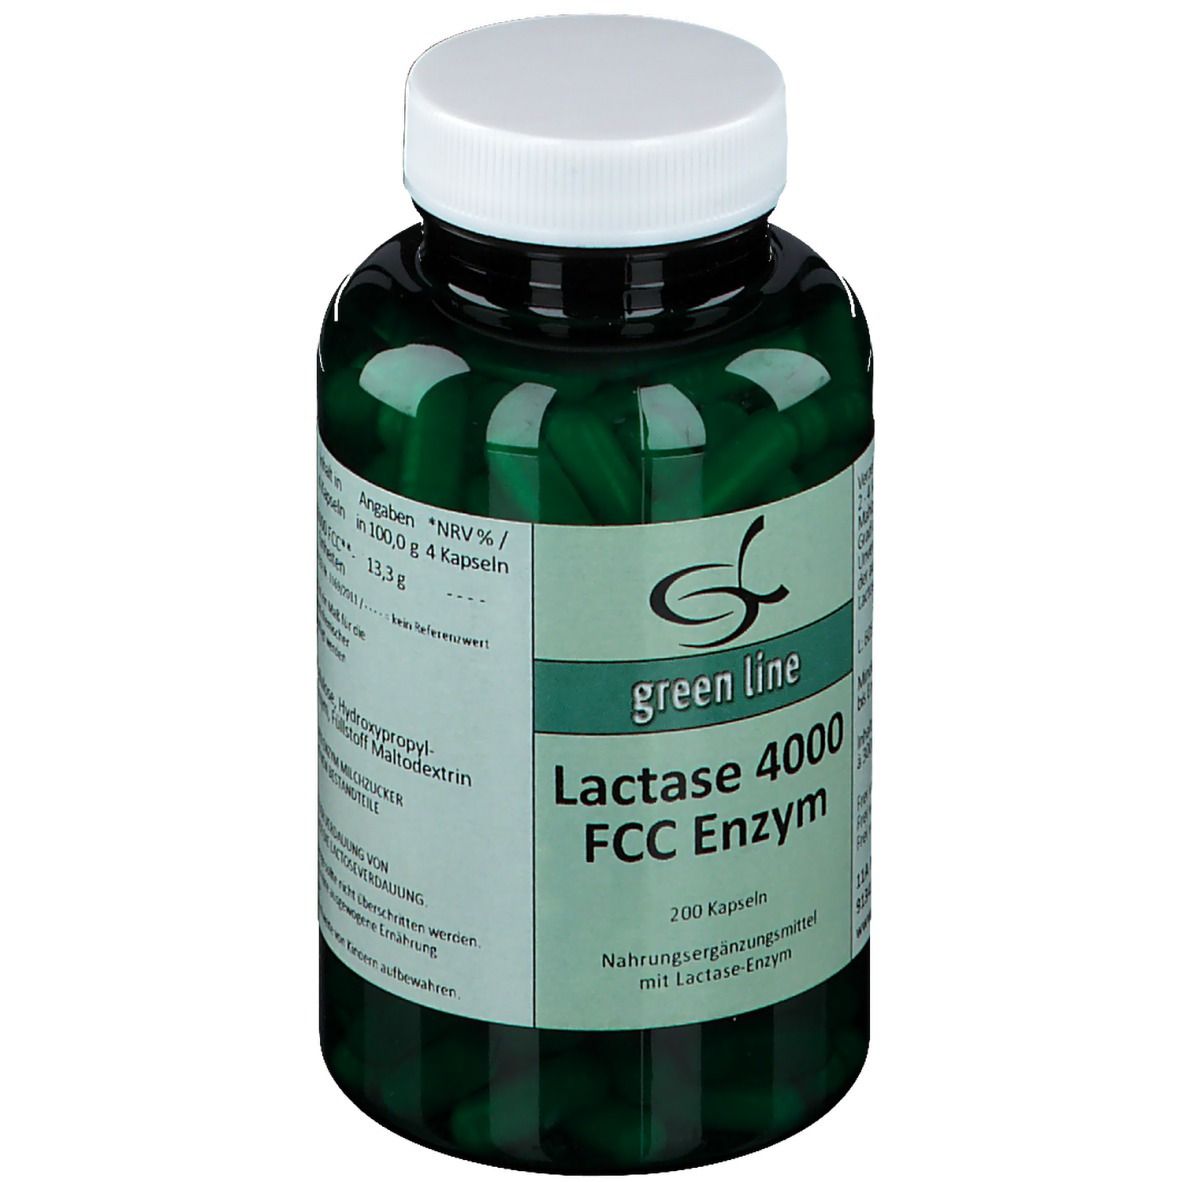 Lactase 4000 FCC Enzym